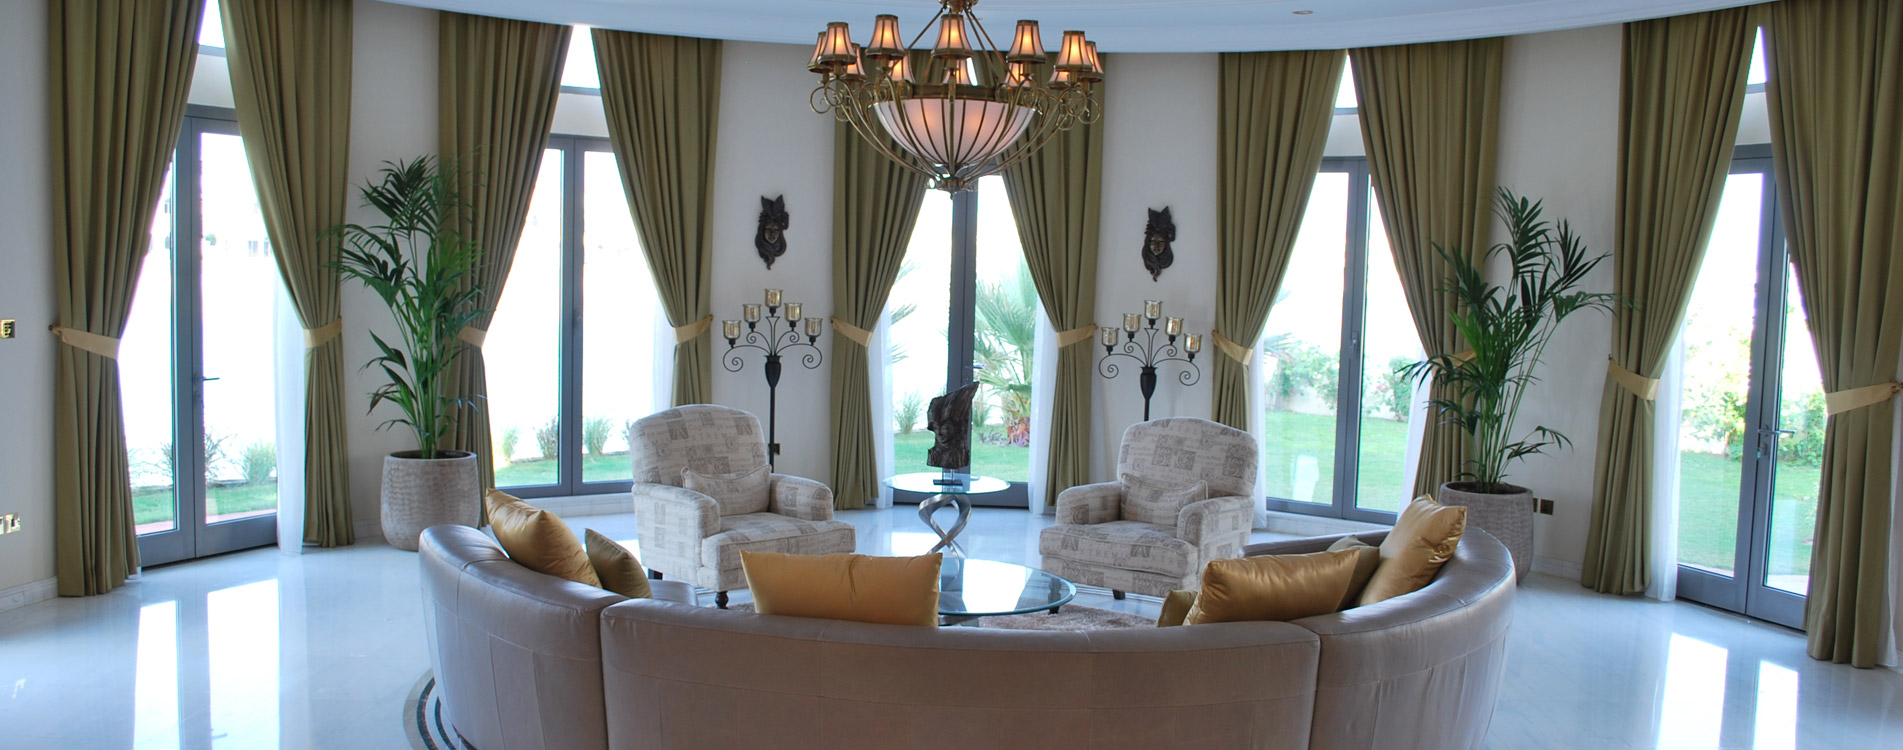 Dubai S Interior Design Trends For 2015 Dubai World Of Curtains